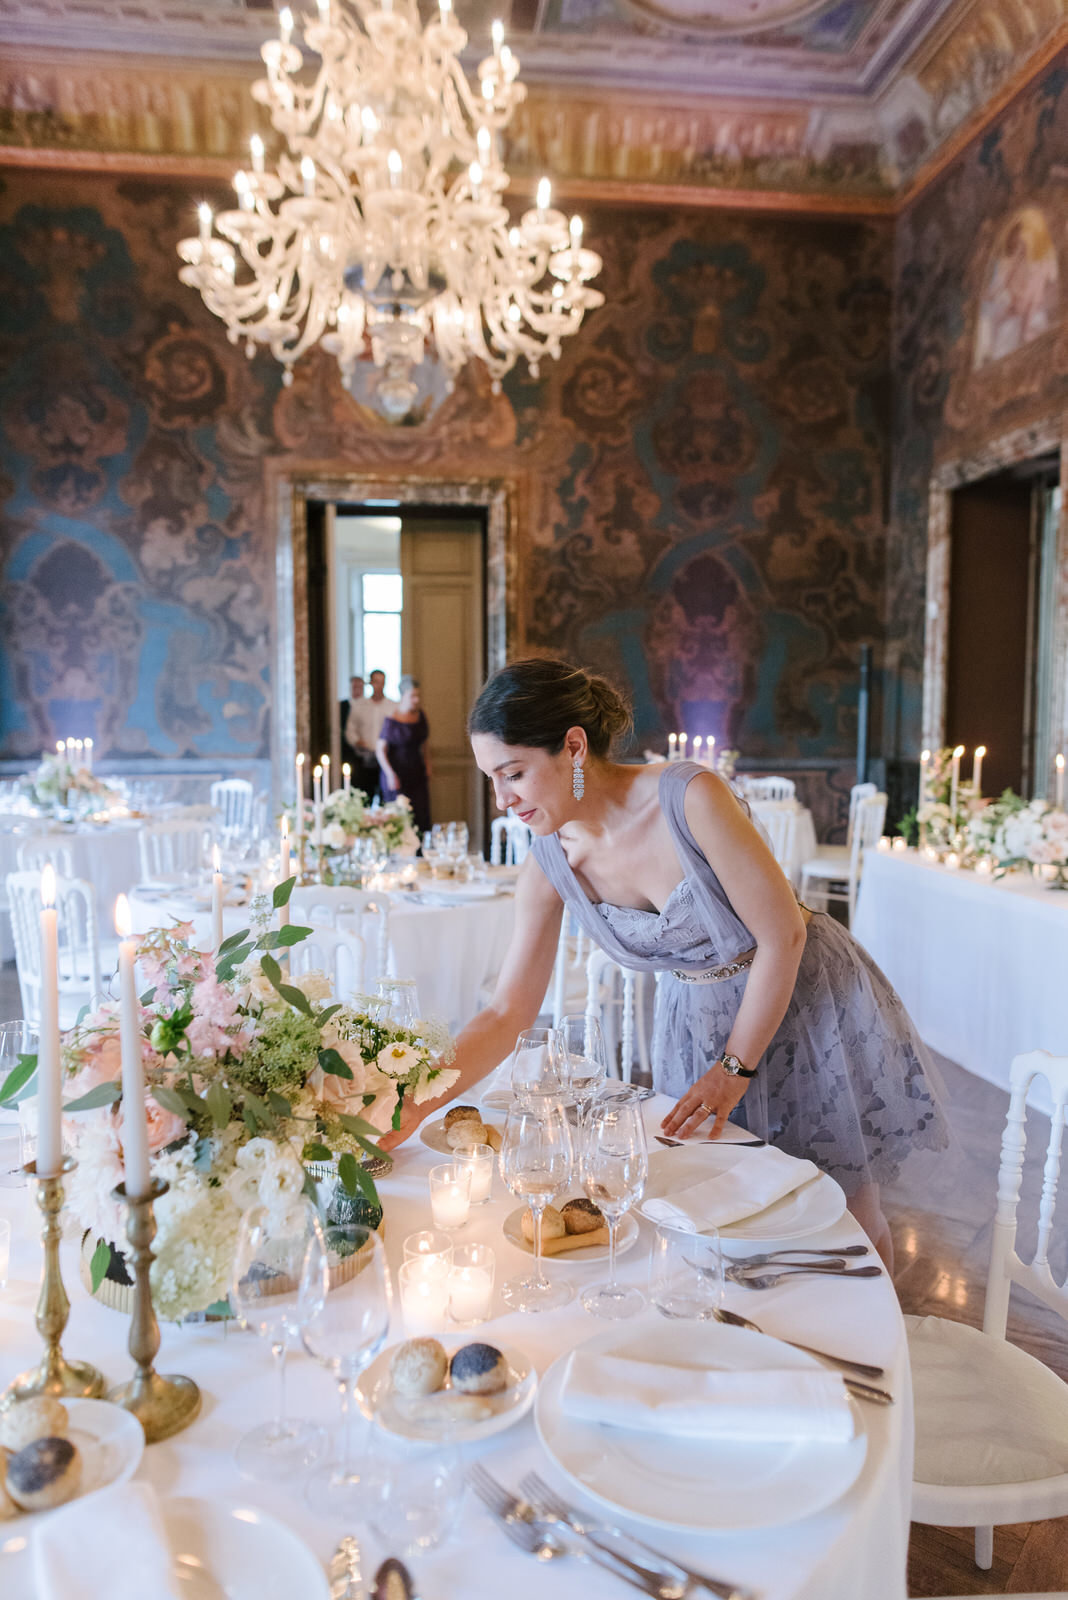 Luxury wedding designed by elisa mocci events